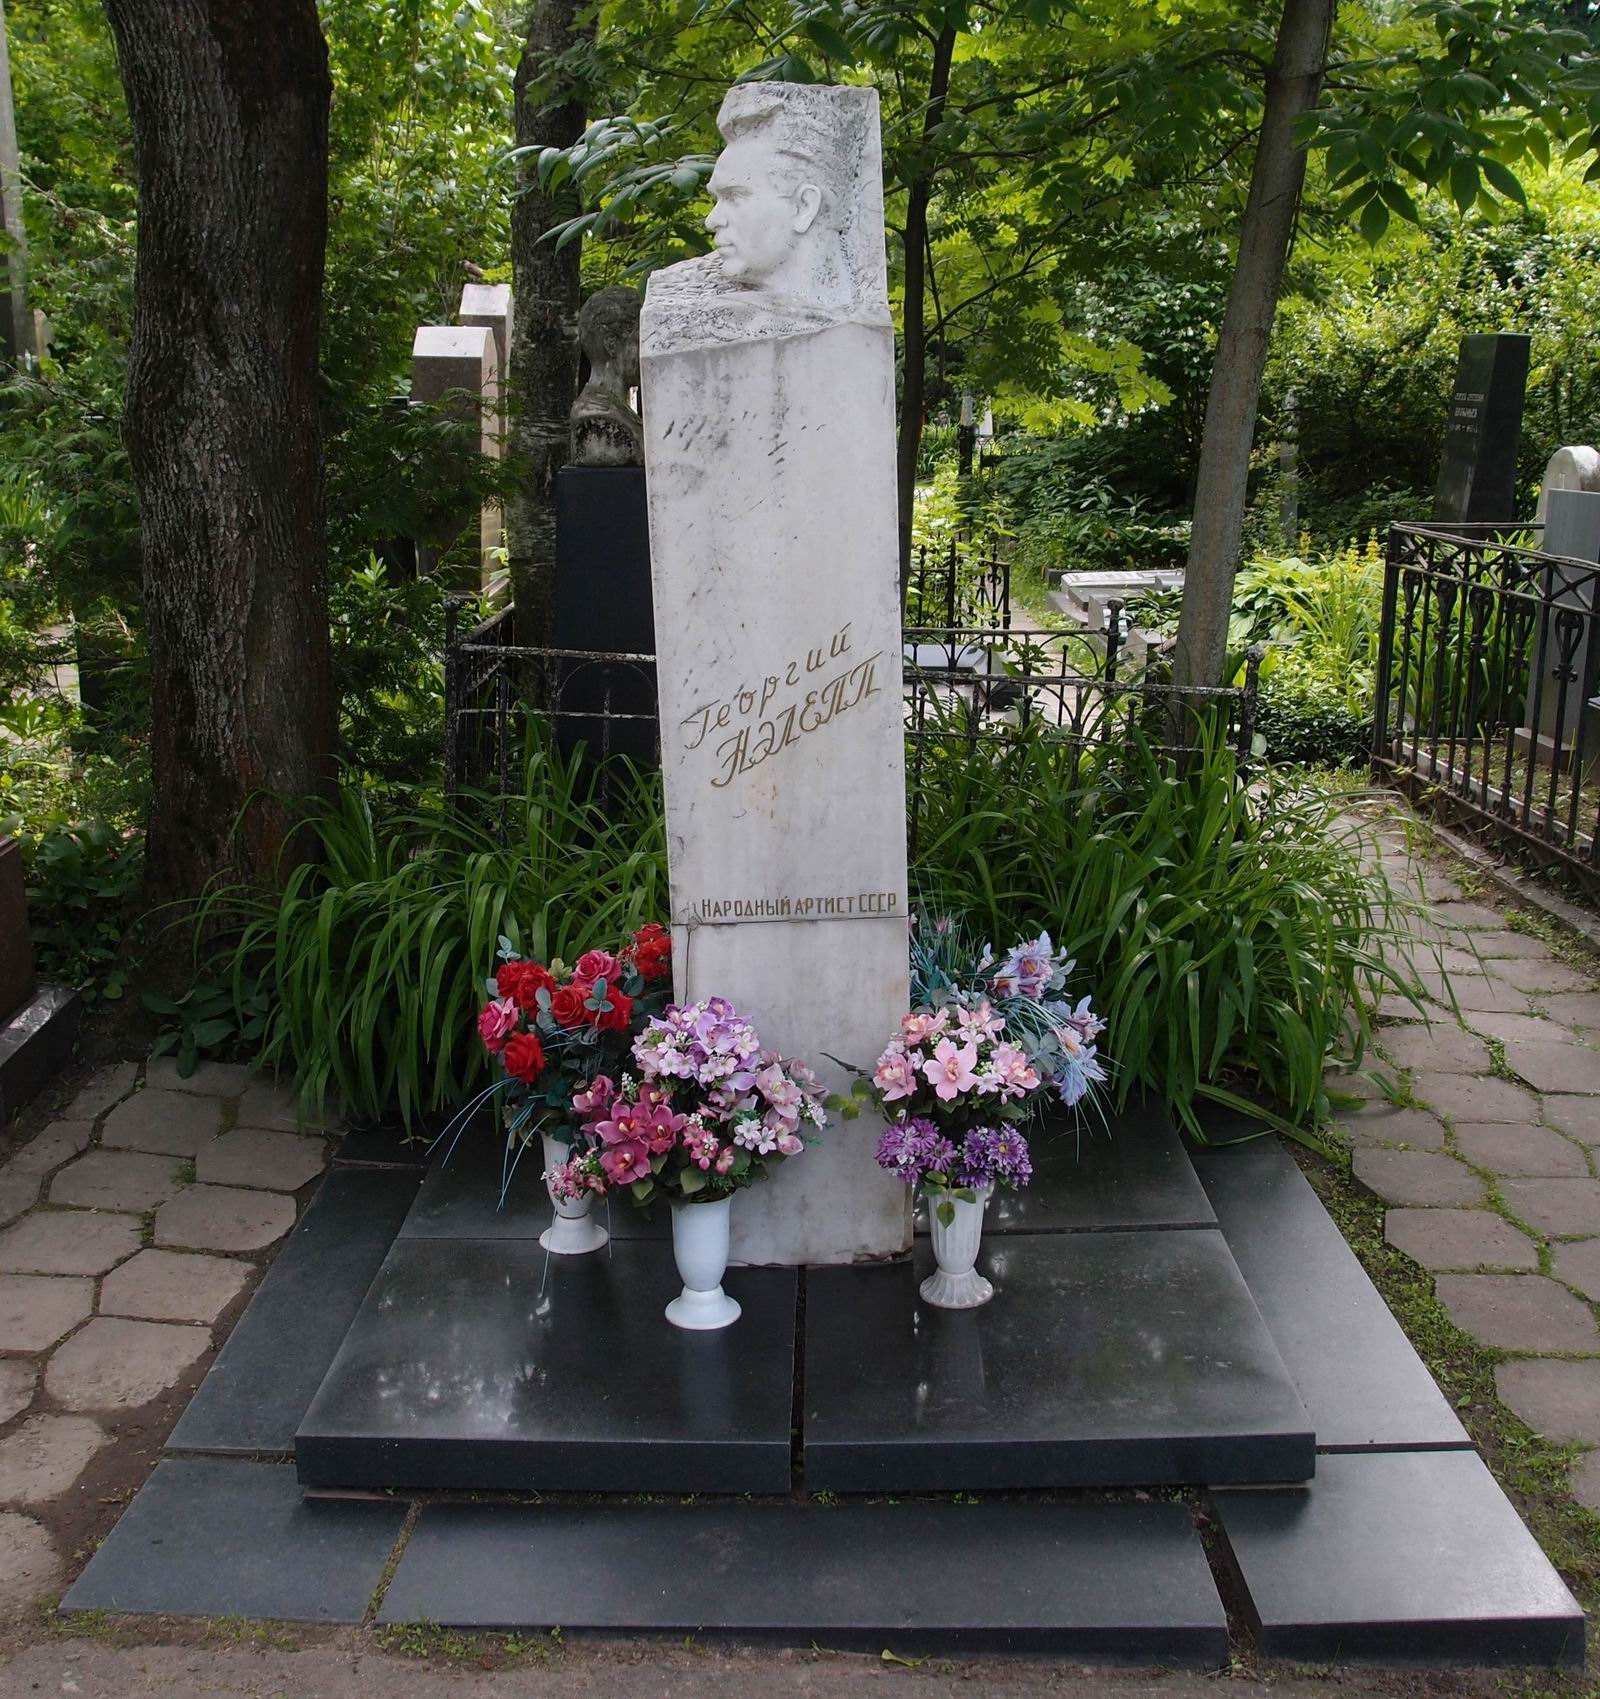 Памятник на могиле Нэлеппа Г.М. (1904-1957), ск. Ф.Фивейский, арх. В.Романовский, на Новодевичьем кладбище (3-60-45). Нажмите левую кнопку мыши чтобы увидеть фрагмент памятника.